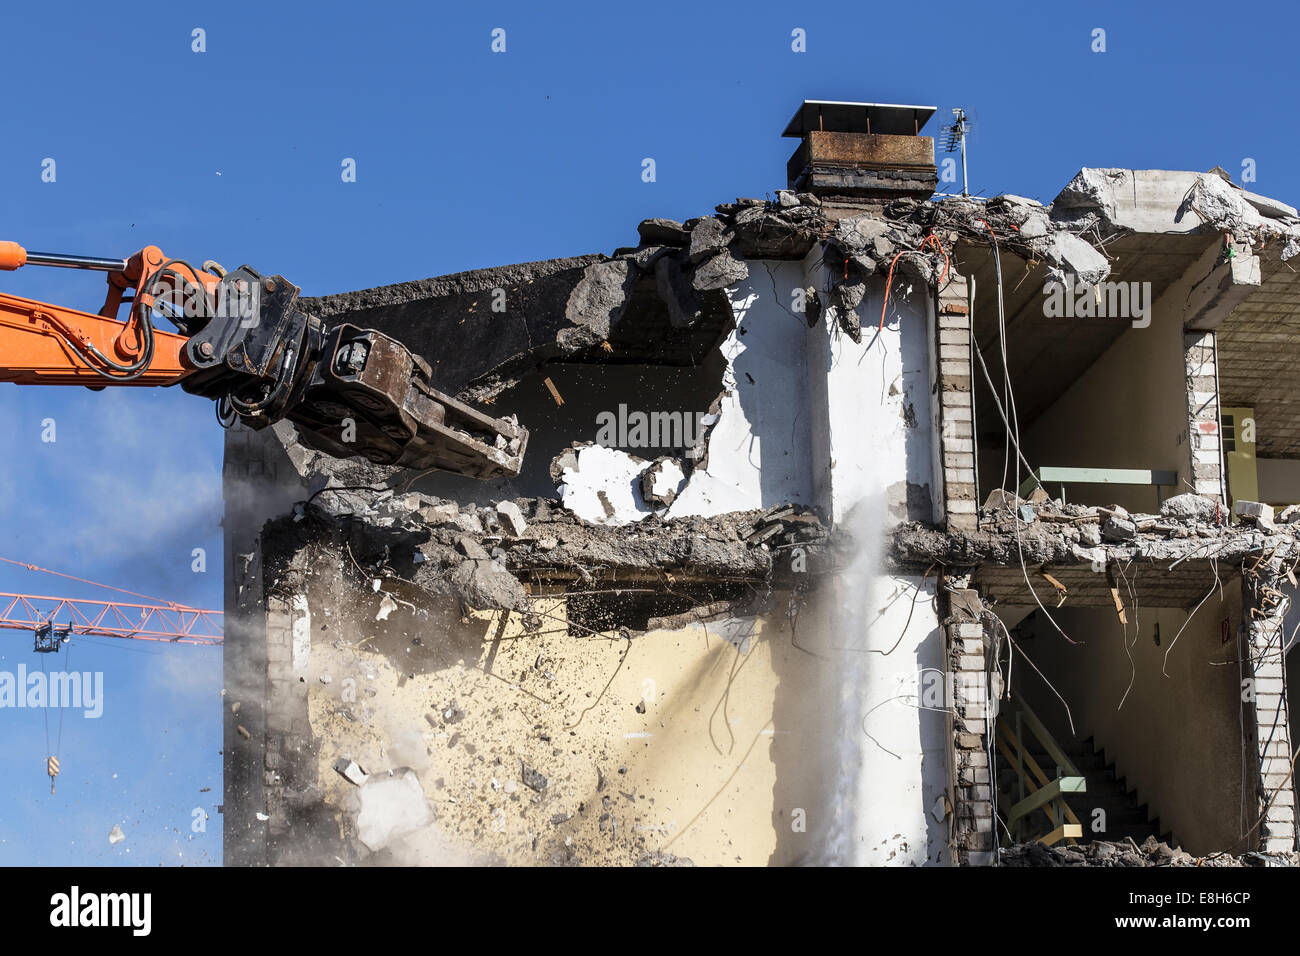 Germania, attrezzature per demolizione abbattendo un vecchio multi-family house Foto Stock